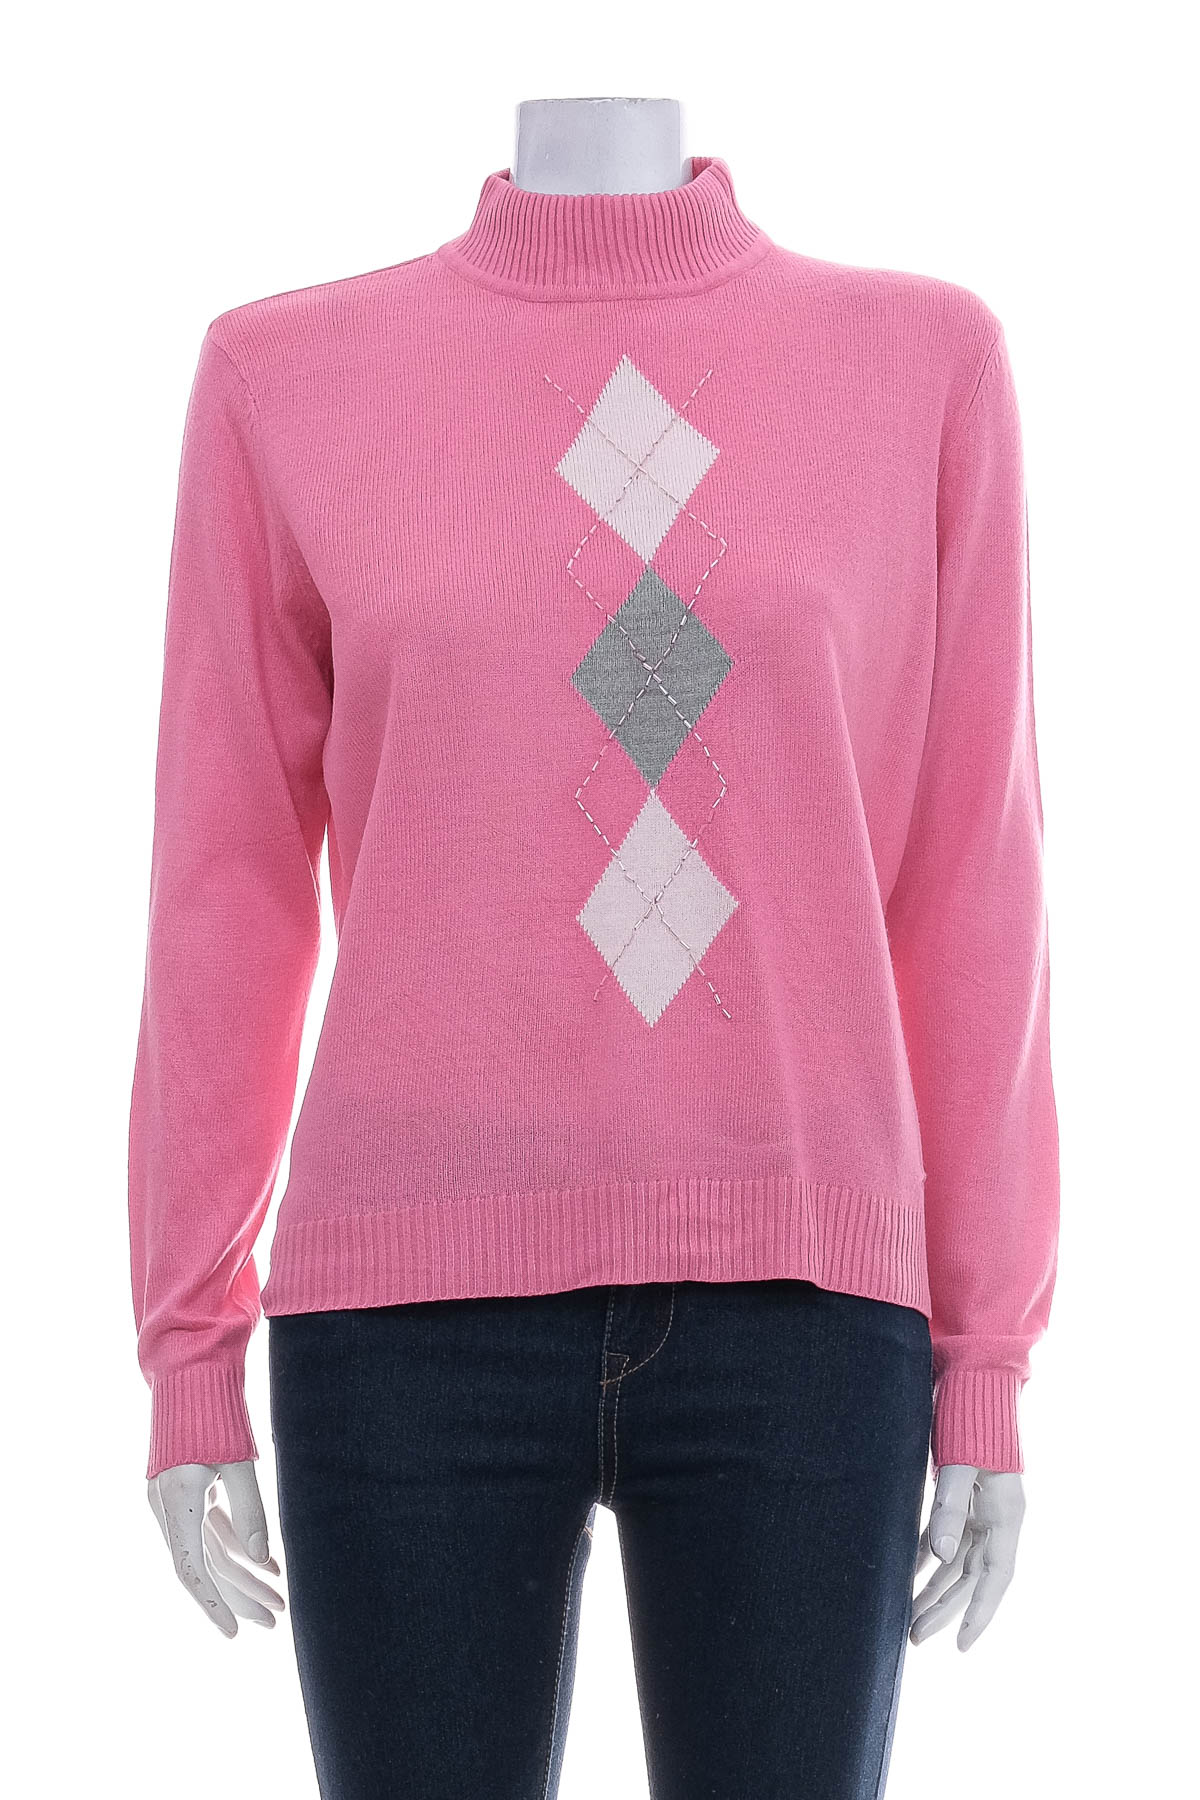 Women's sweater - Jennifer Moore - 0